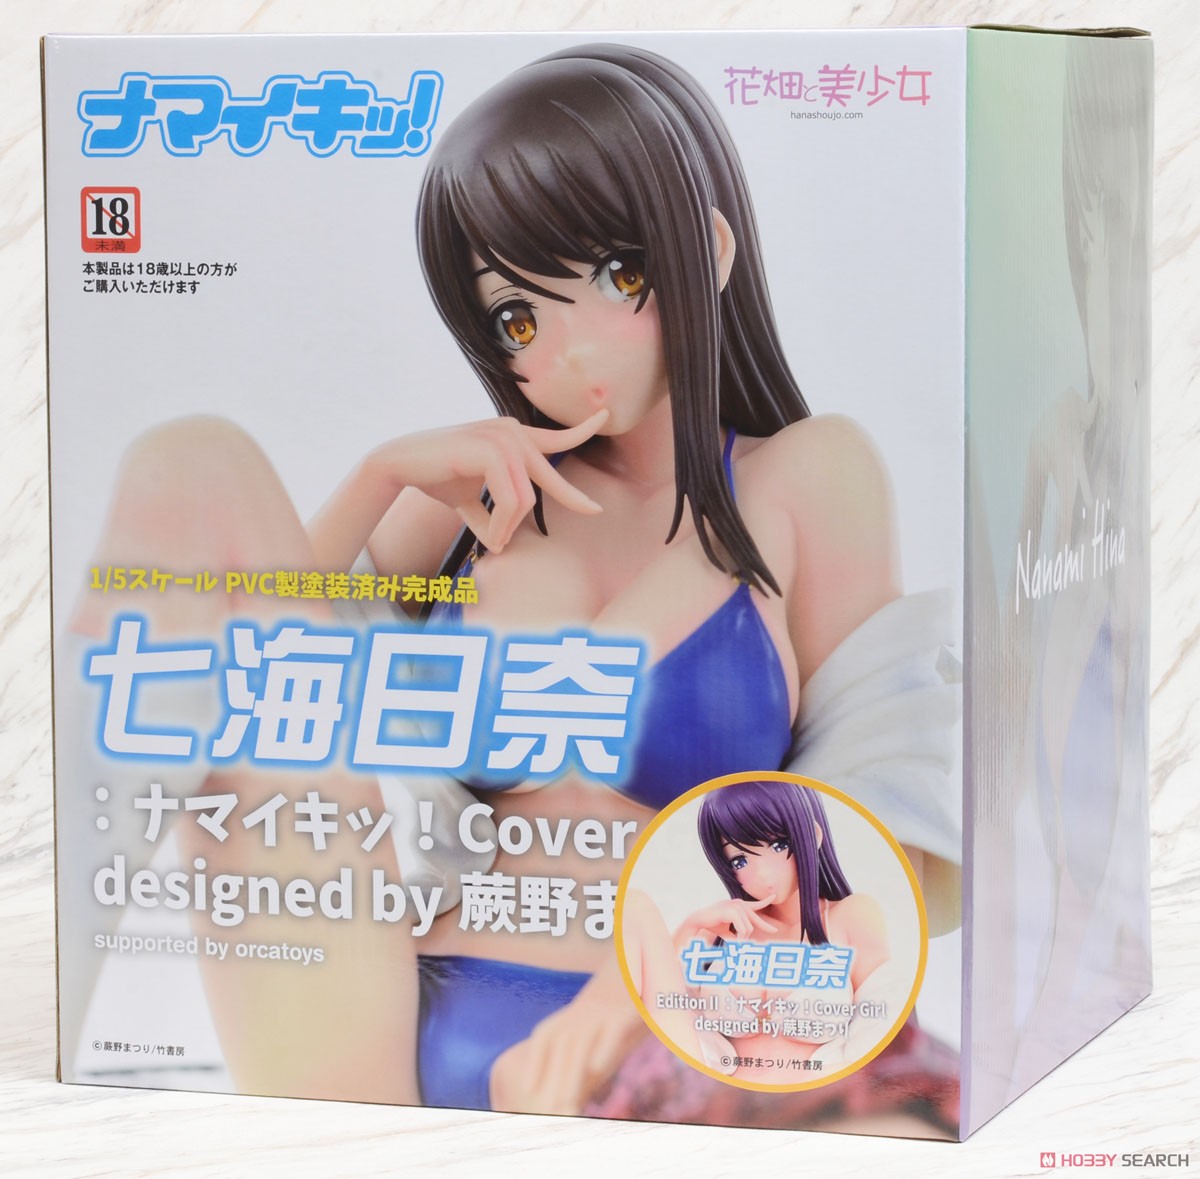 七海日奈EditionII：ナマイキッ！ Cover Girl designed by 蕨野まつり (フィギュア) パッケージ1